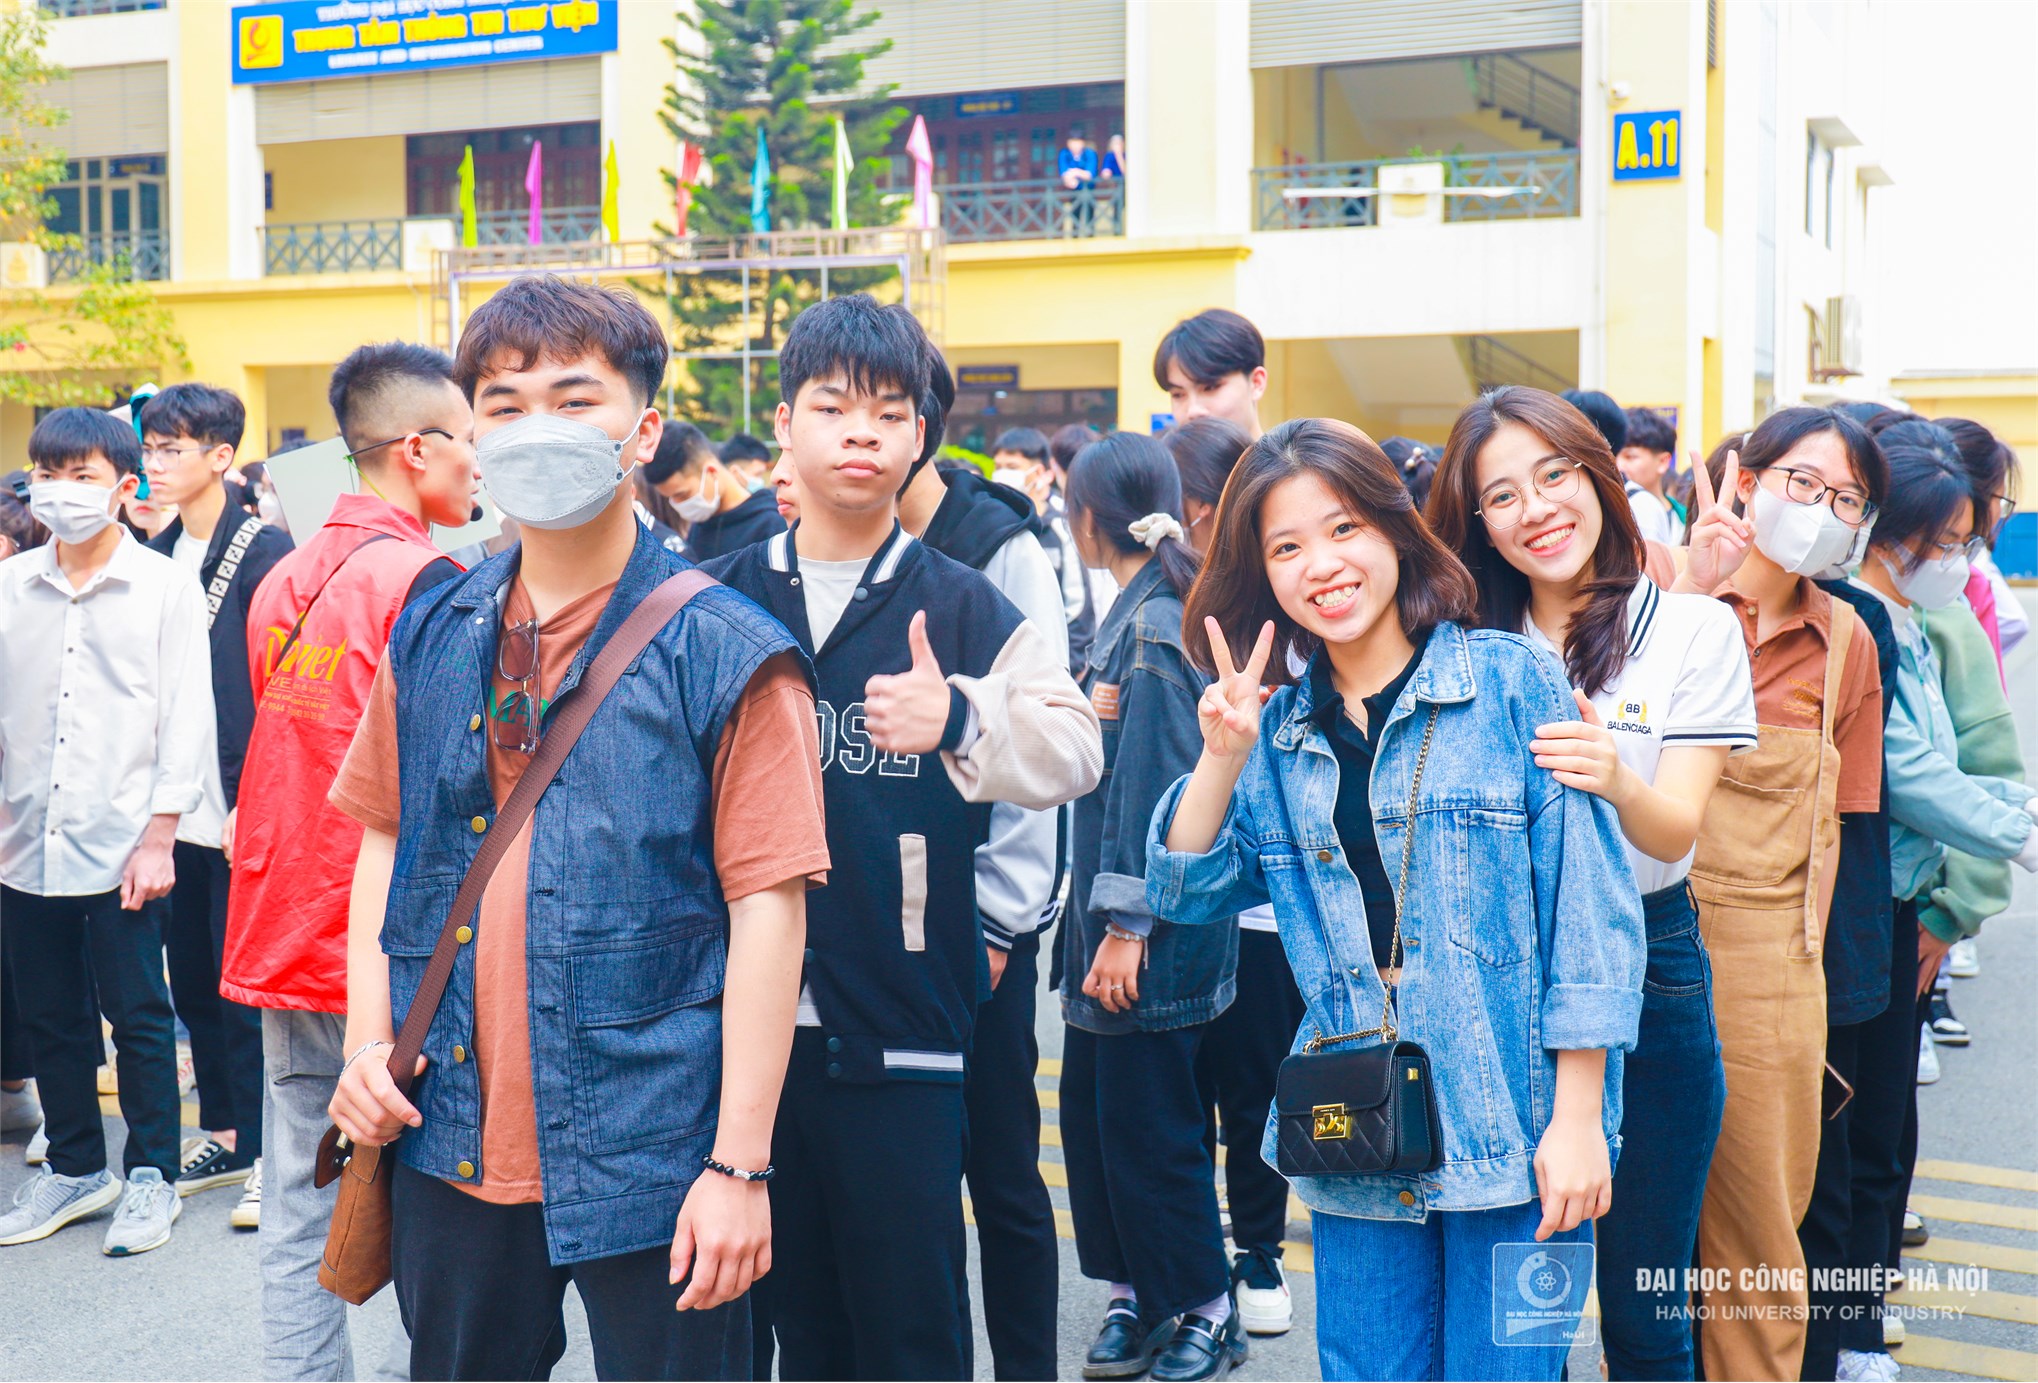 Hơn 400 học sinh Trường THPT C Nghĩa Hưng – Nam Định tham quan Đại học Công nghiệp Hà Nội